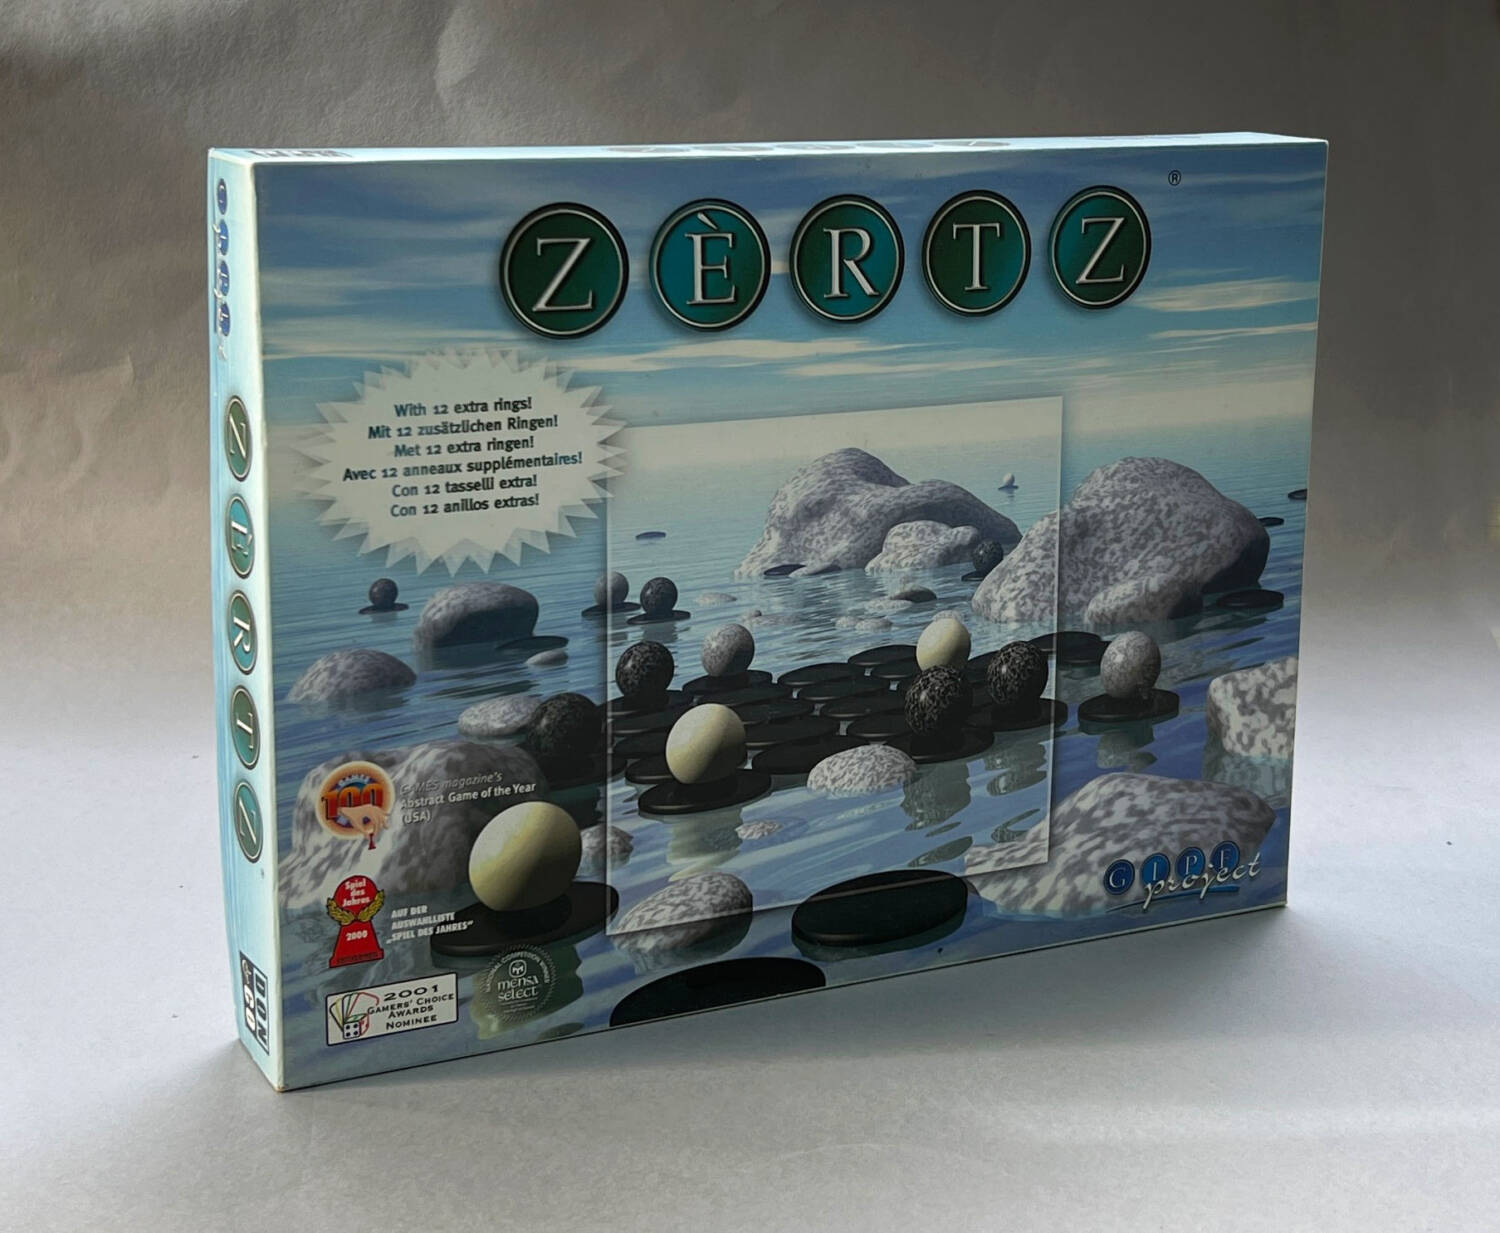 ZÈRTZ: The box